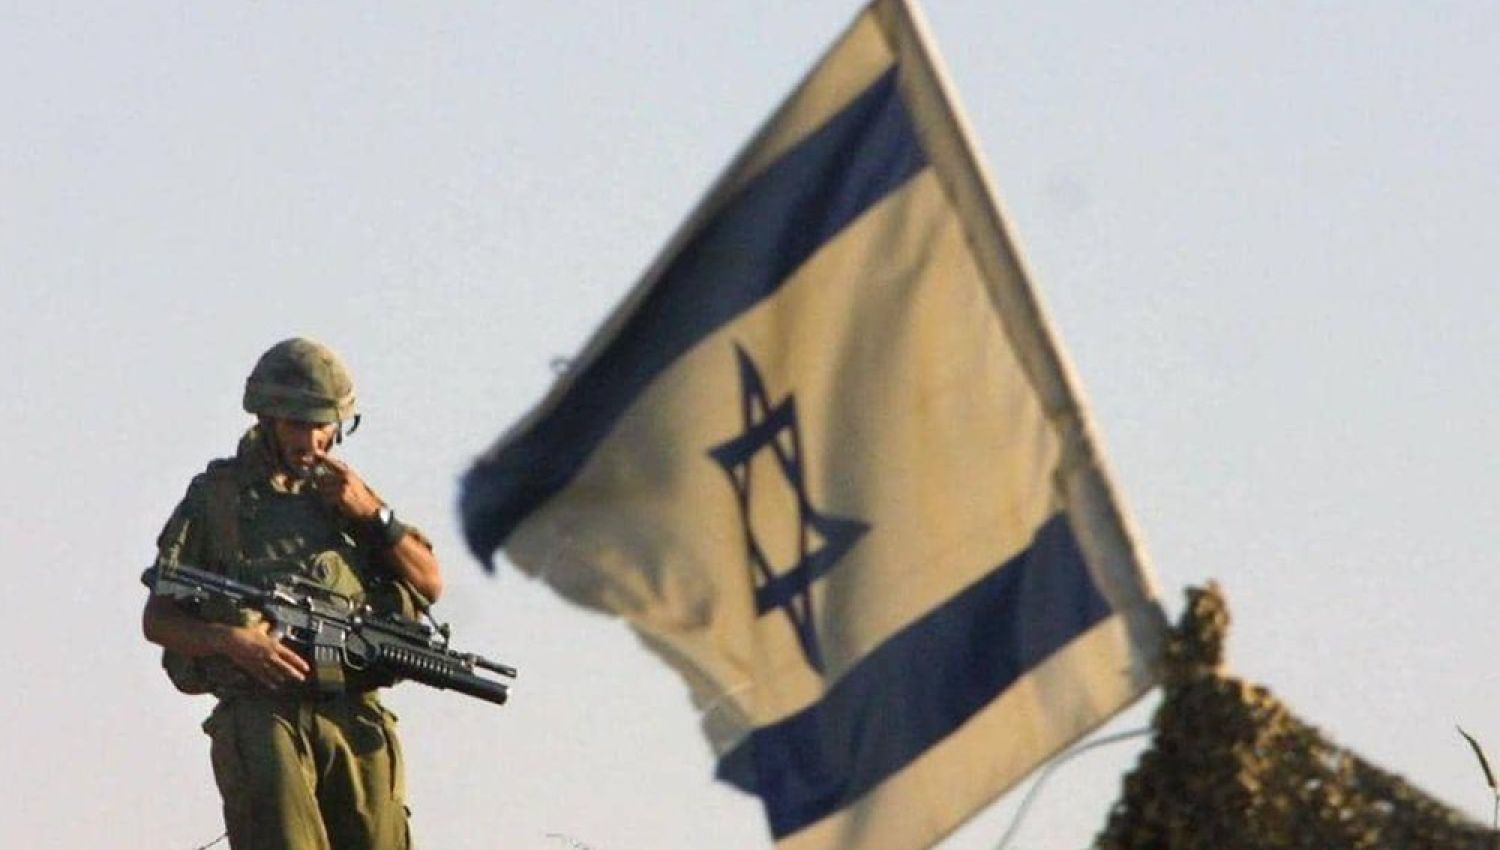 مسؤول في الشاباك: 20 ألف مقاتل يحتجزون "إسرائيل" رهينة!